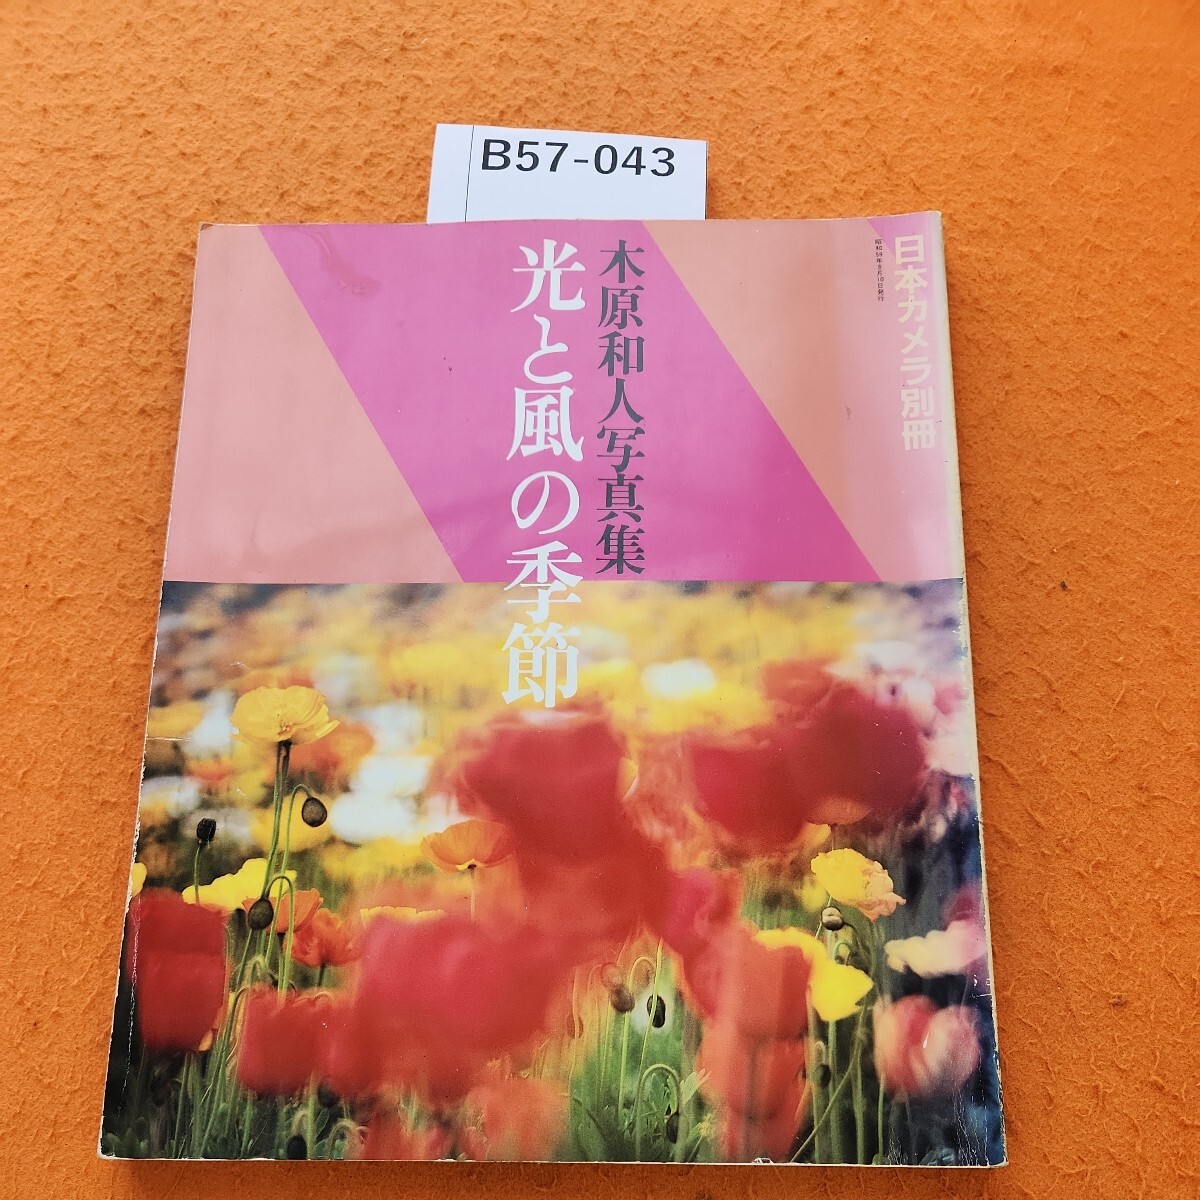 B57-043 日本カメラ別冊 木原和人写真集 光と風の季節_画像1